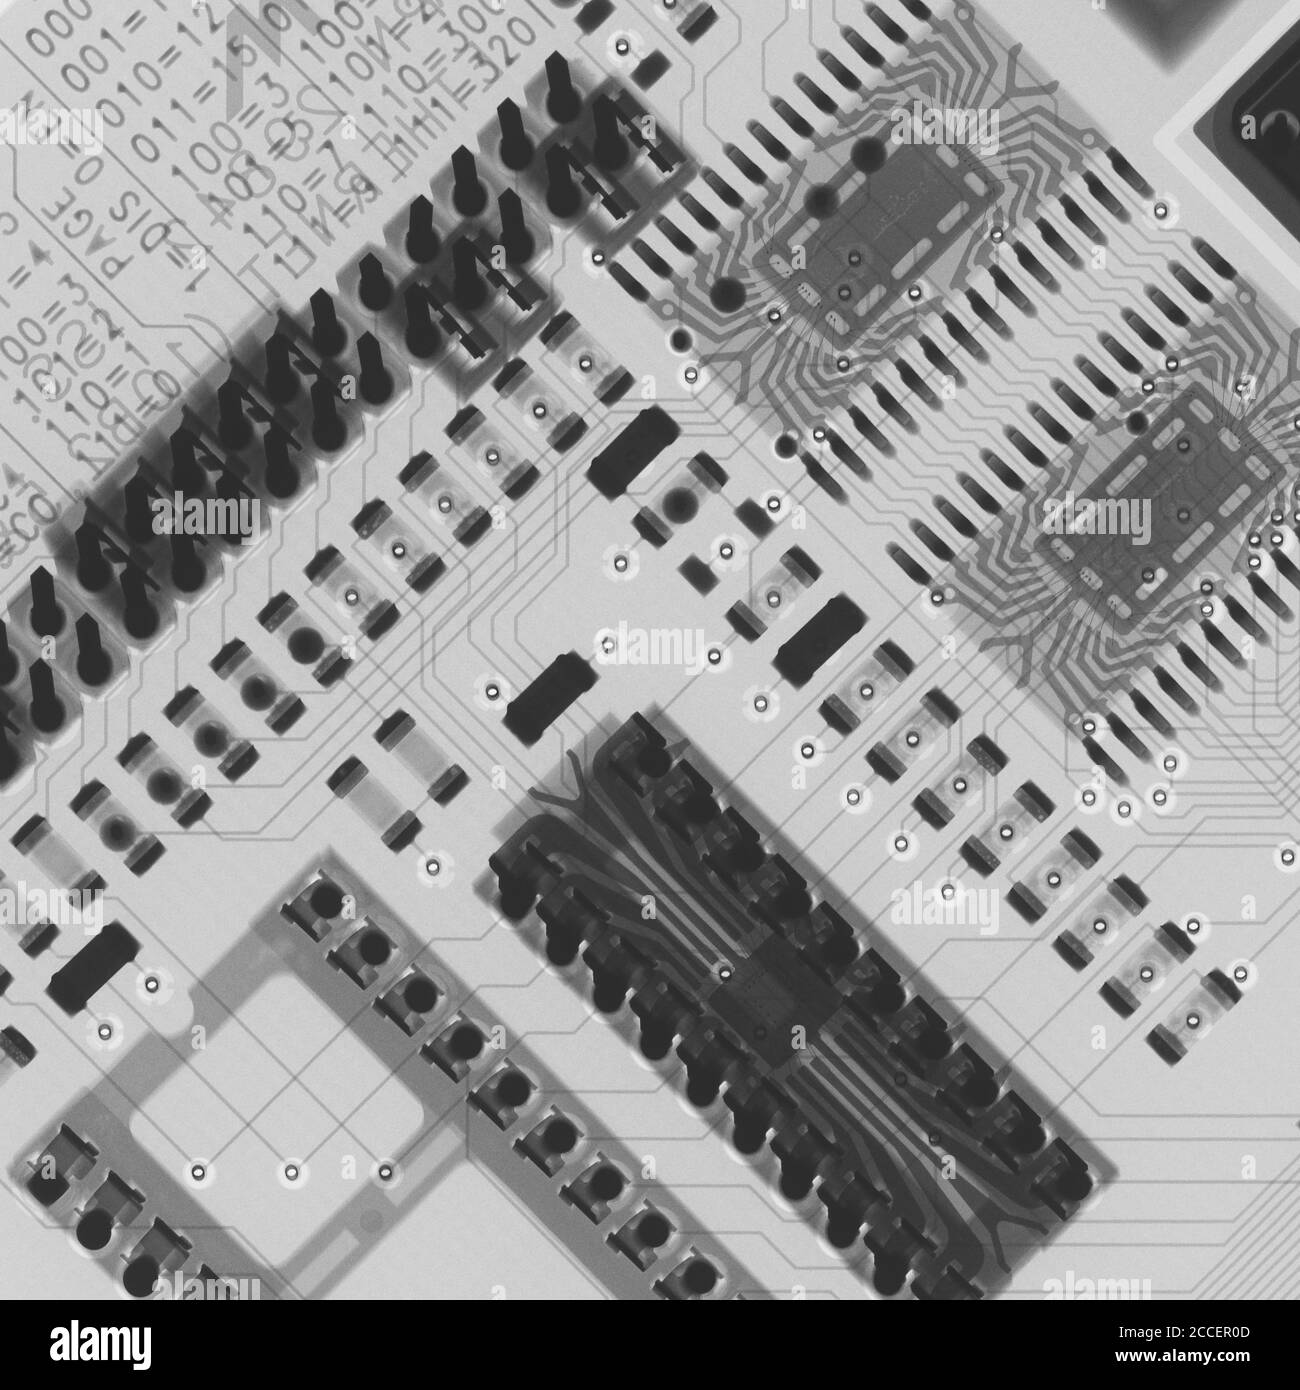 Circuit board, X-ray Stock Photo